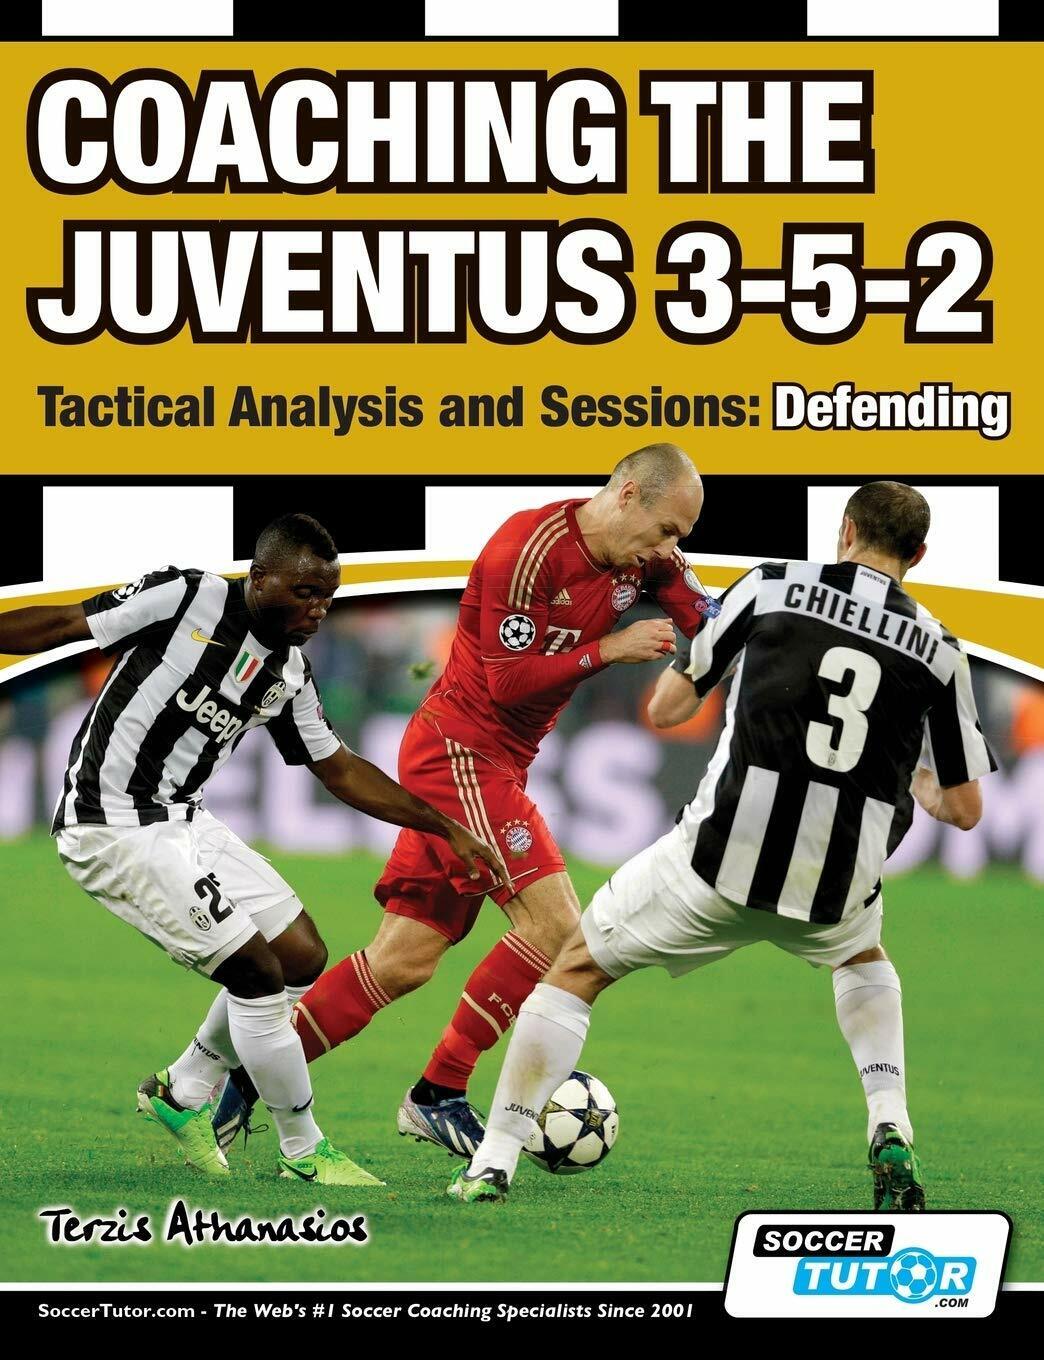 Coaching the Juventus 3-5-2 - Athanasios Terzis - SoccerTutor.com Ltd., 2016